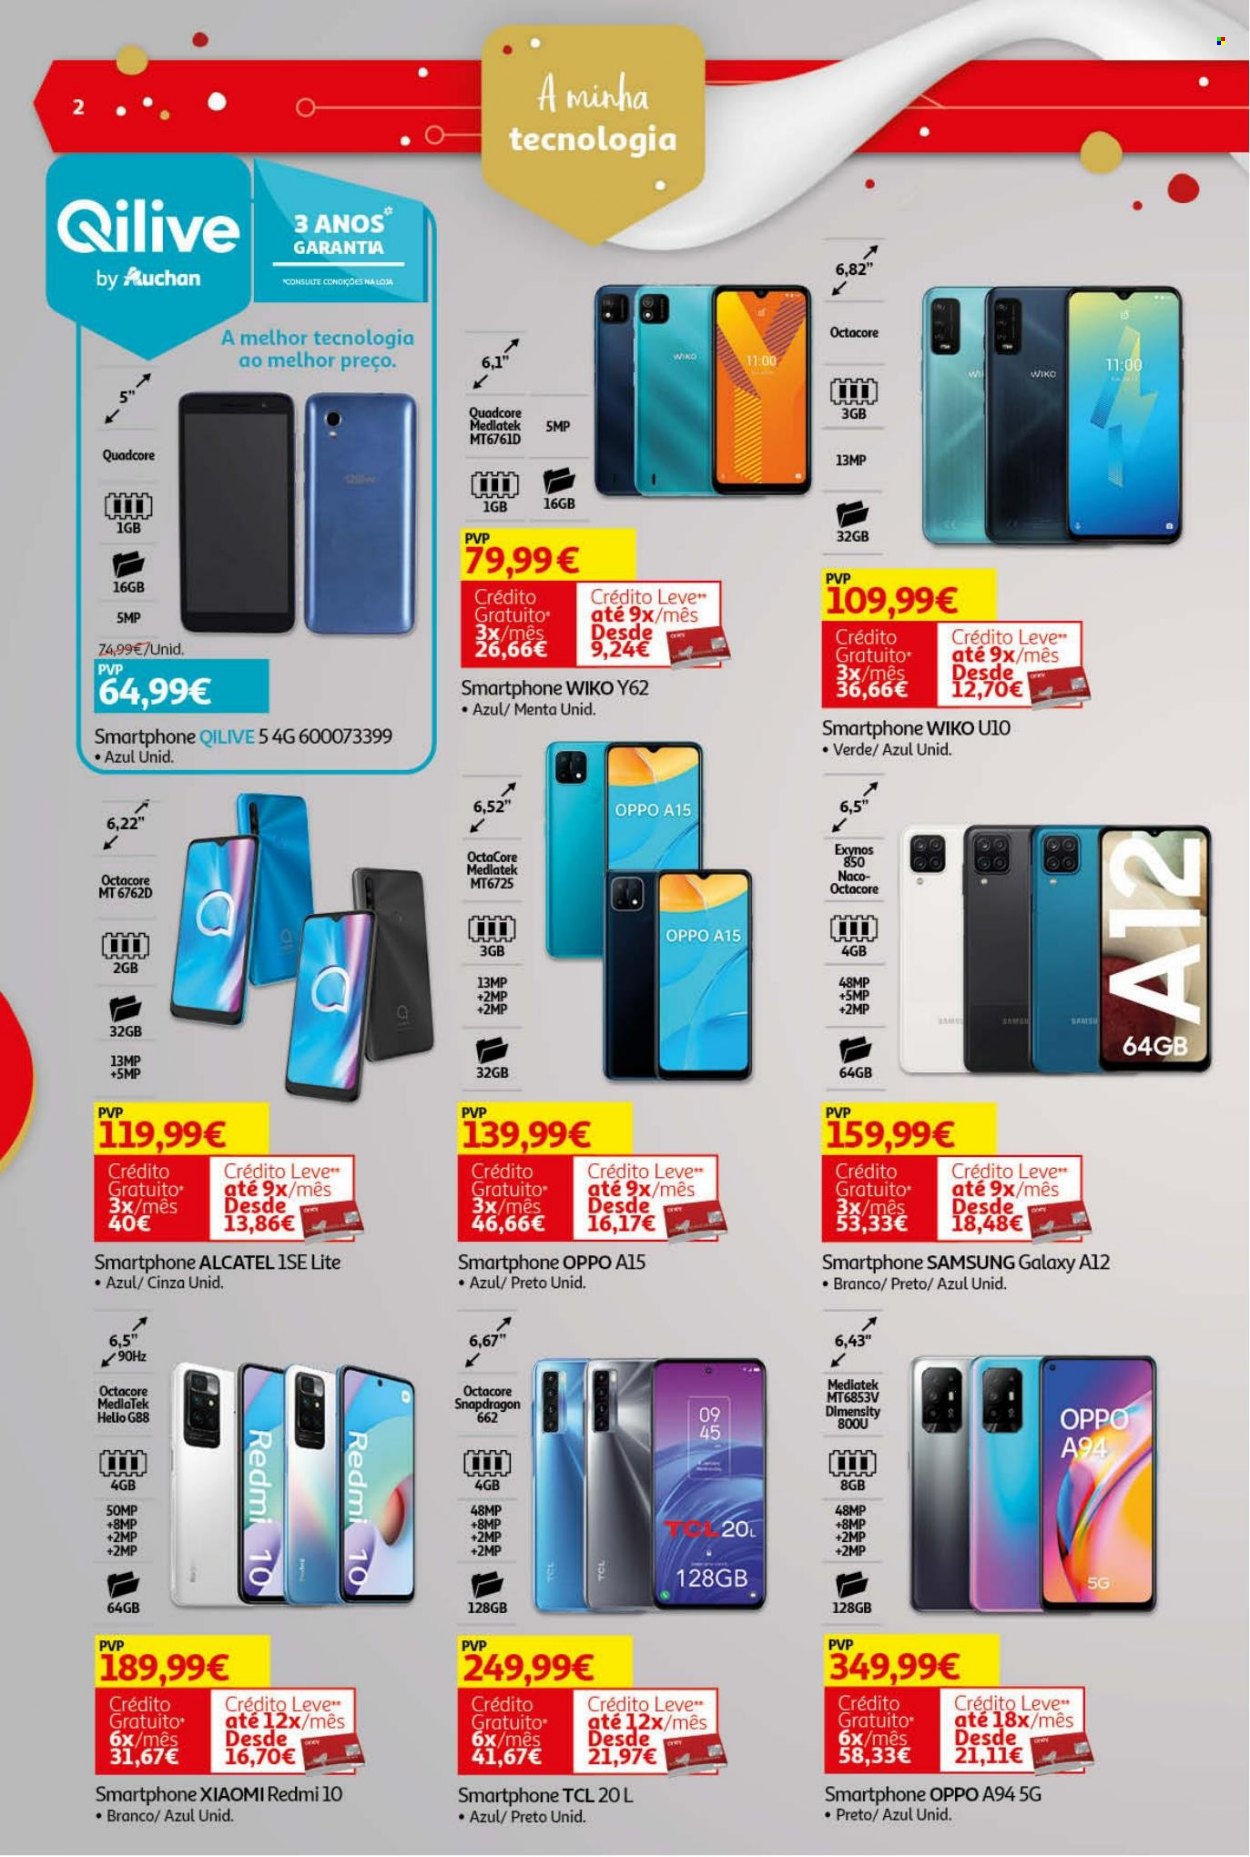 thumbnail - Folheto Auchan - 26.11.2021 - 24.12.2021 - Produtos em promoção - Samsung, Alcatel, smartphone, Samsung Galaxy, Redmi. Página 2.